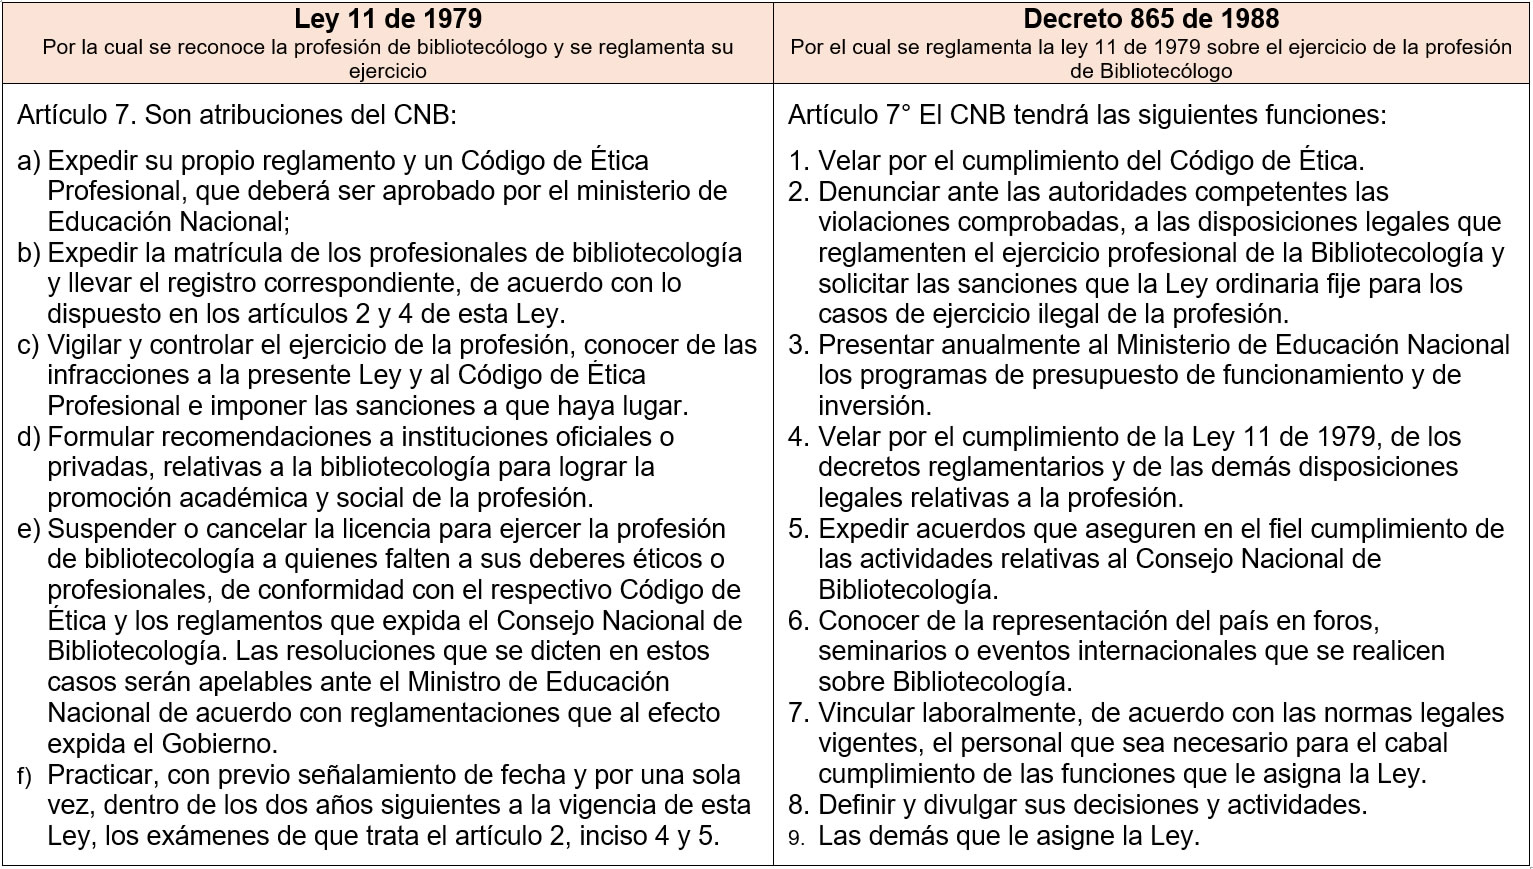 Imagen Ley 11 y Decreto 865